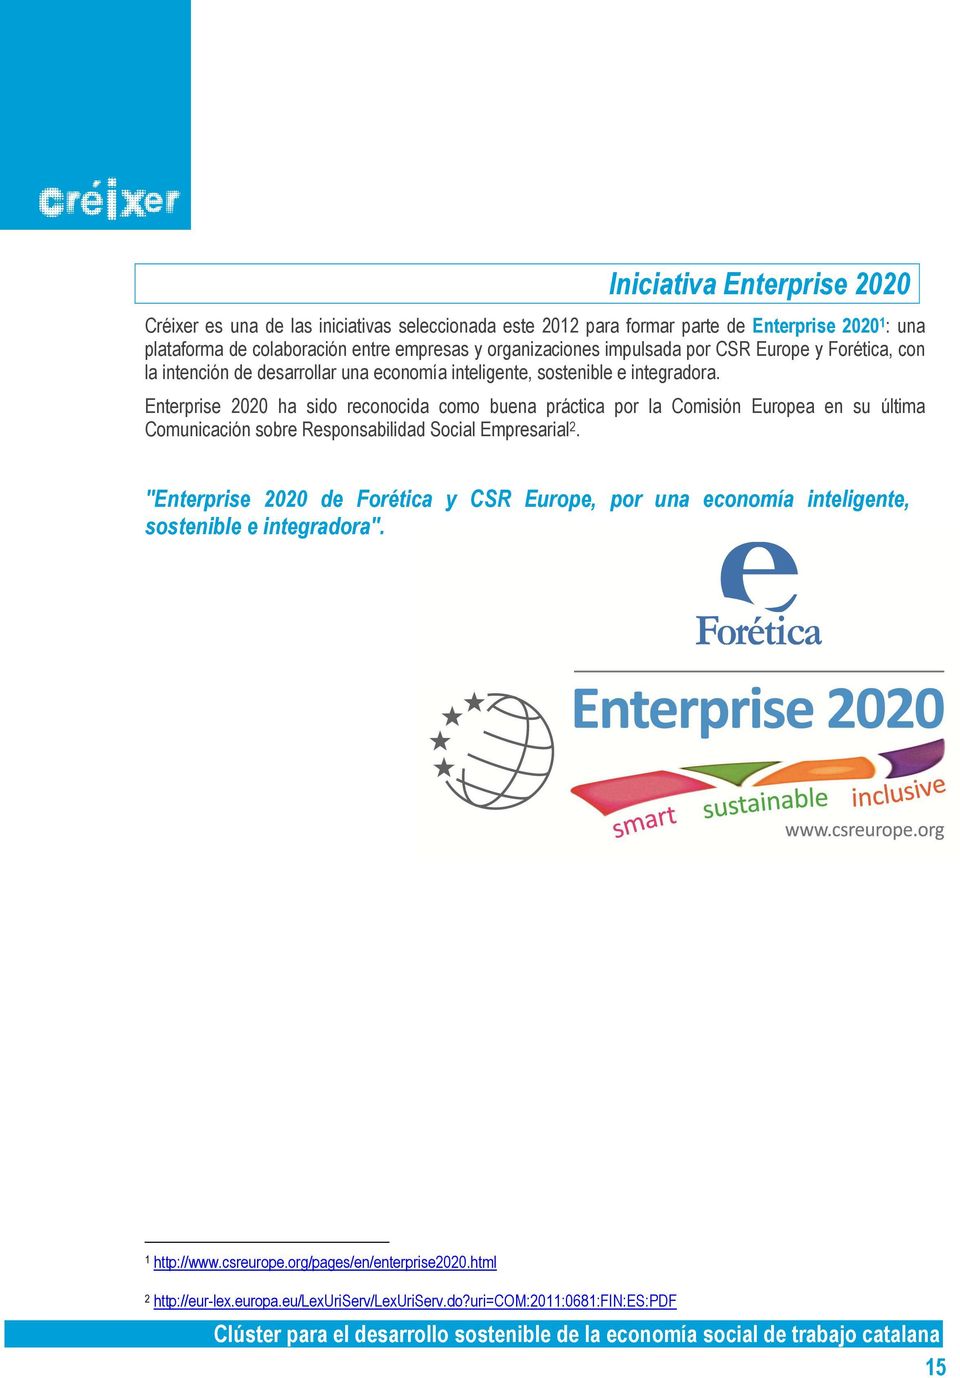 Enterprise 2020 ha sido reconocida como buena práctica por la Comisión Europea en su última Comunicación sobre Responsabilidad Social Empresarial 2.